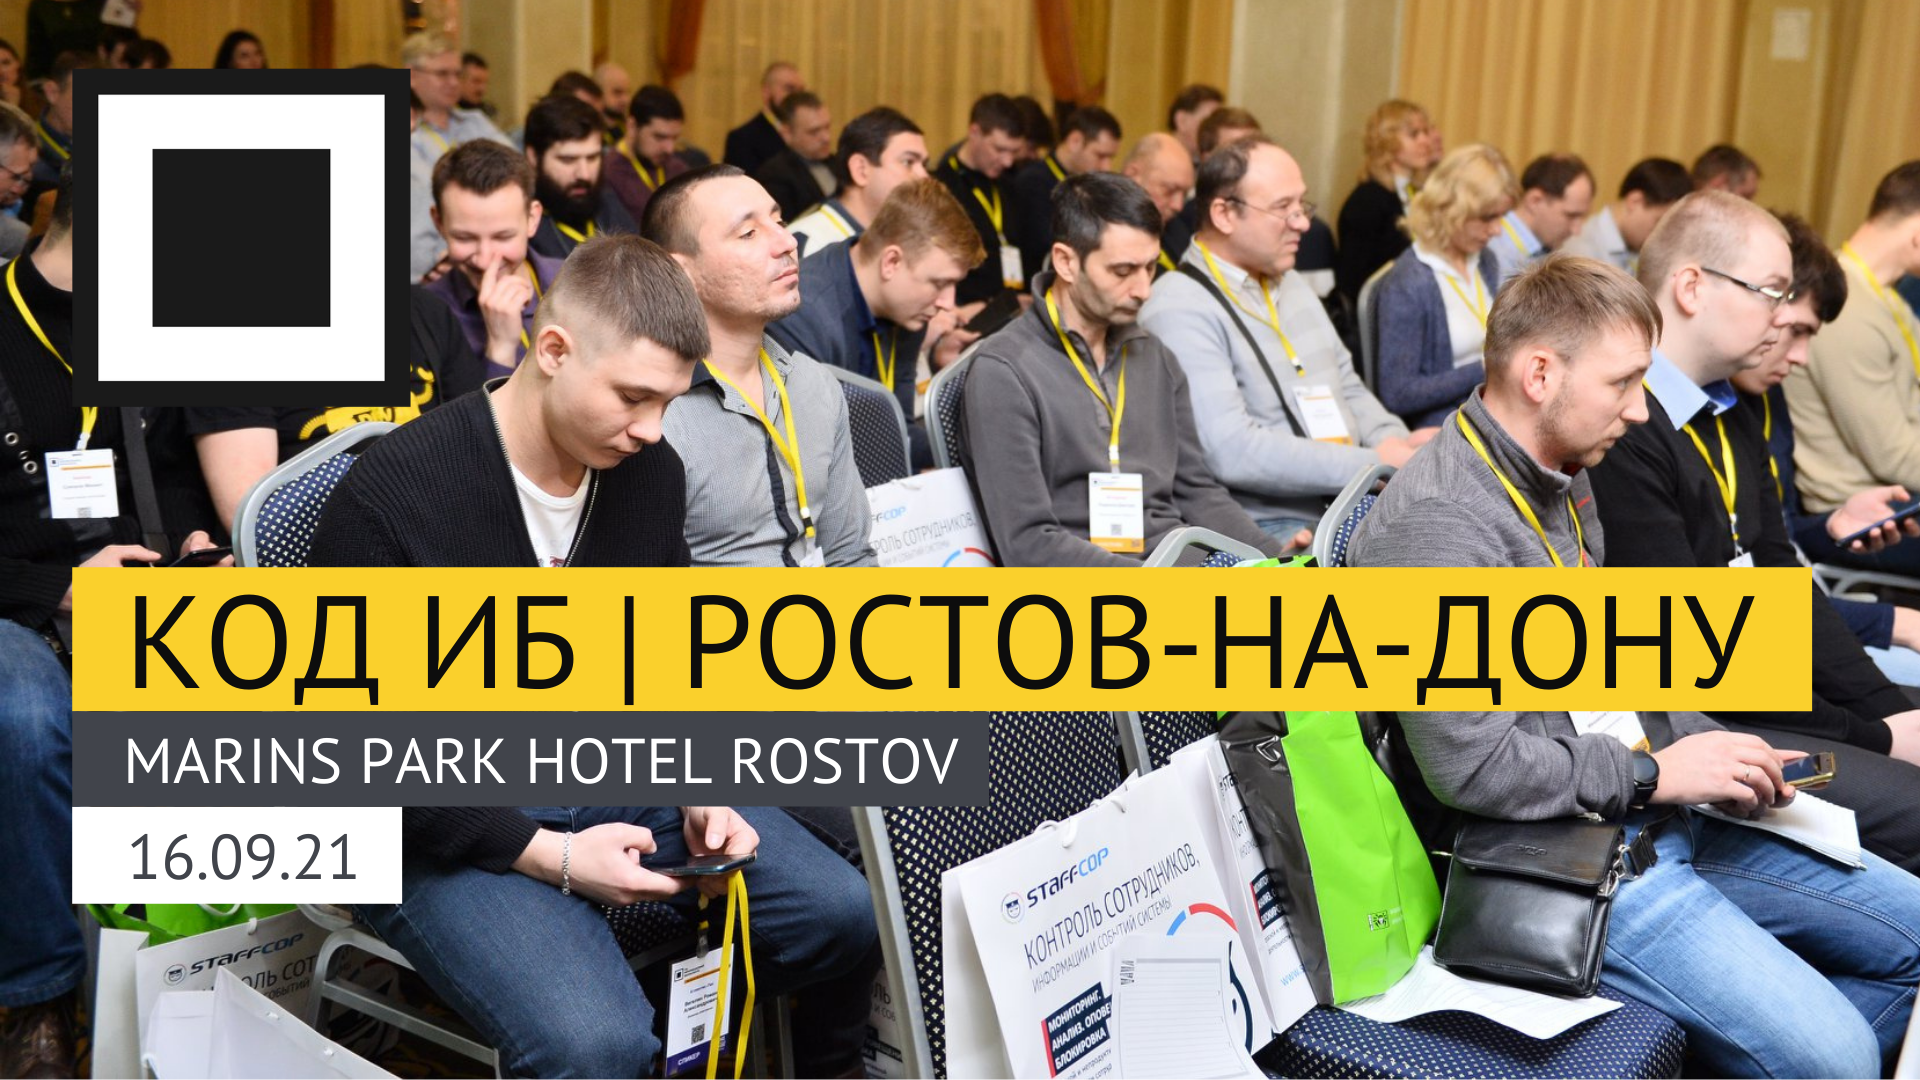 Специалисты по информационной безопасности вновь встретятся на конференции Код ИБ в Ростове-на-Дону